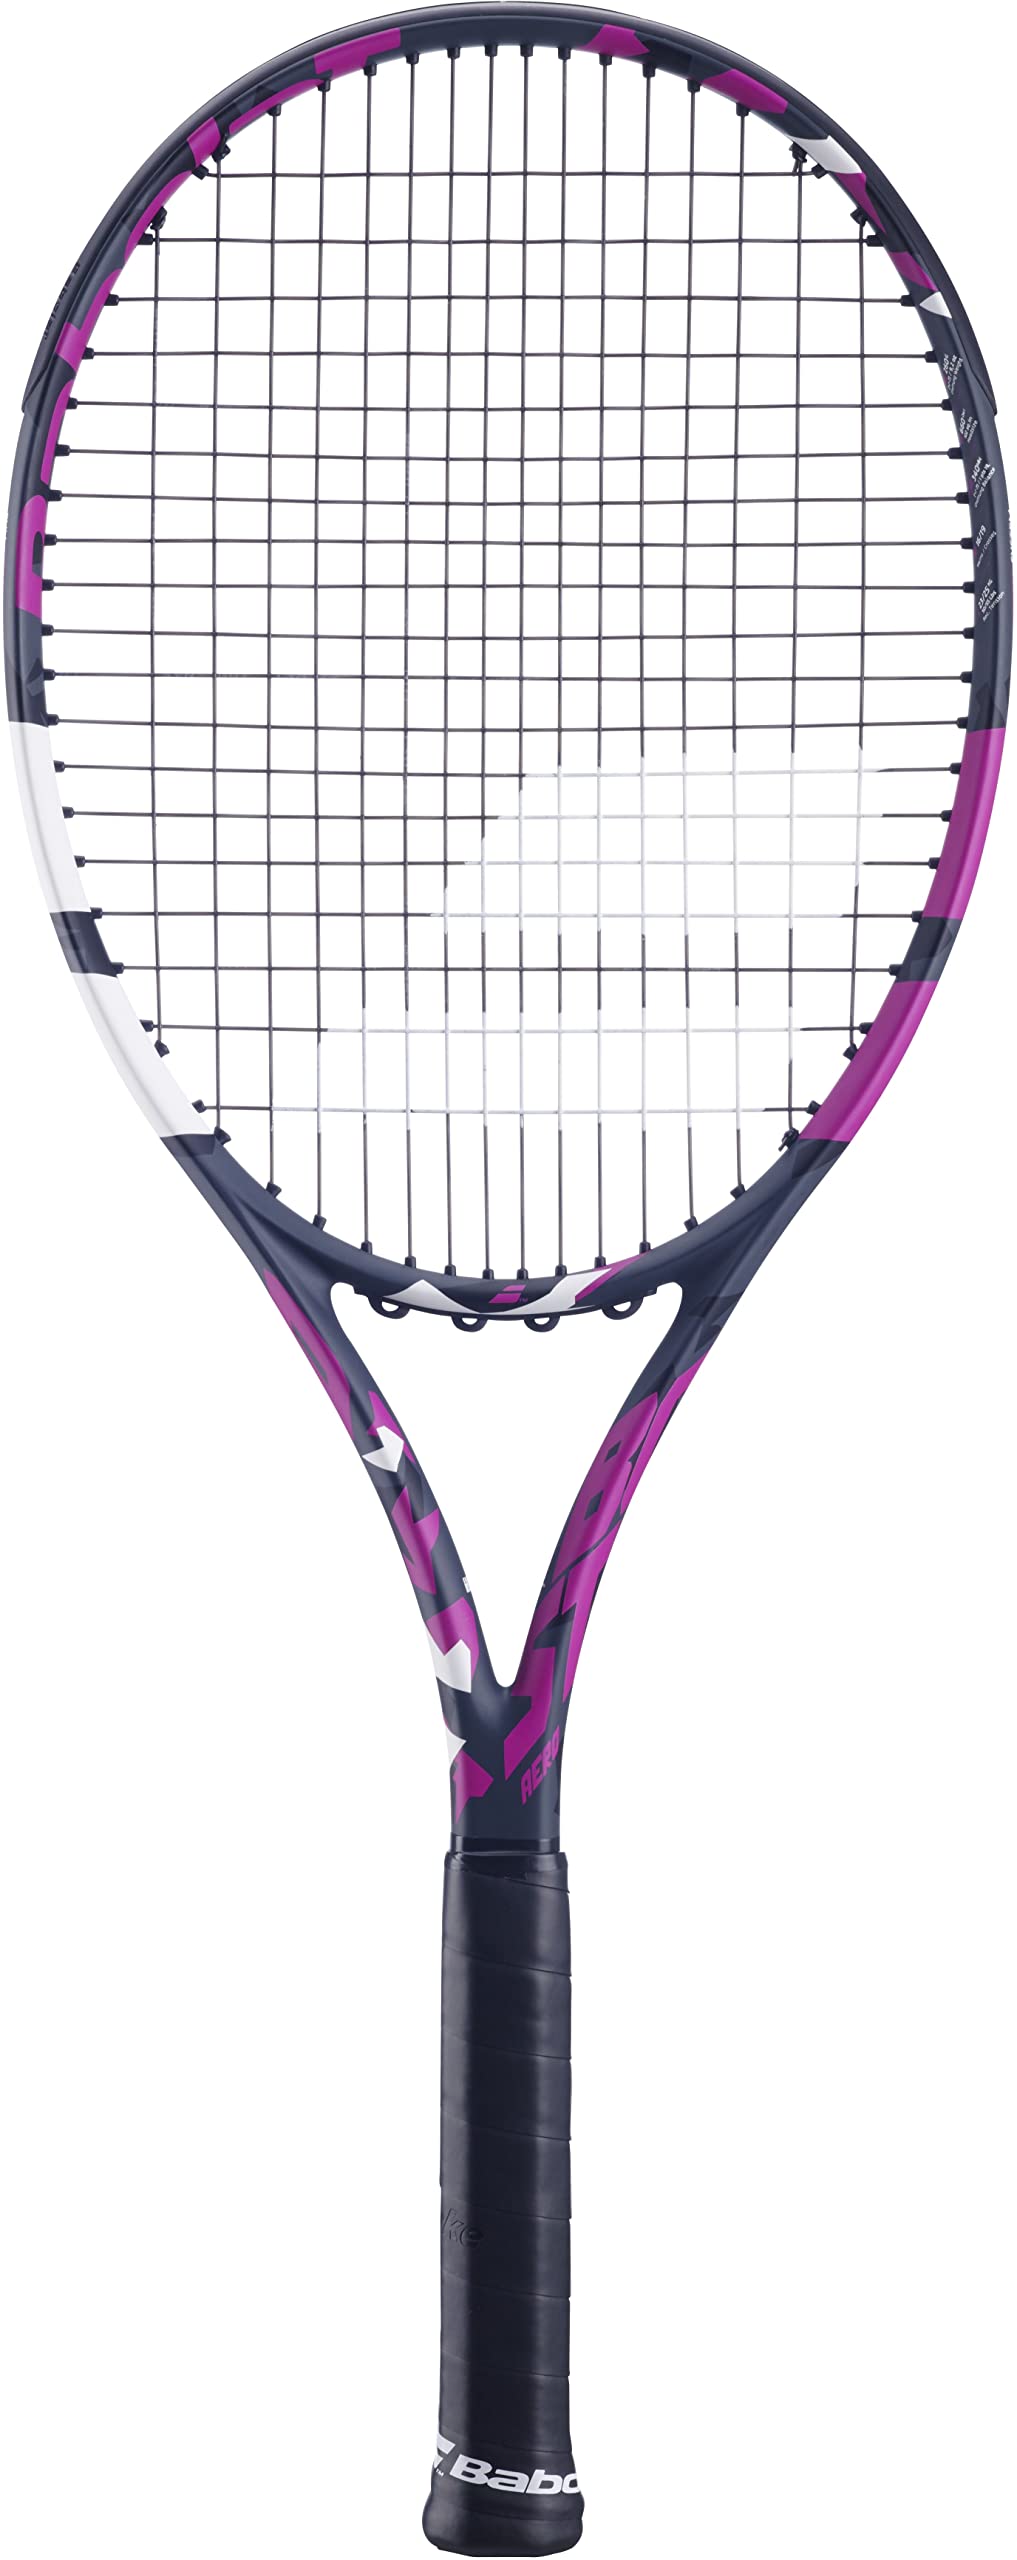 Babolat - Tennisschläger für Erwachsene Boost Aero Pink - Leichter Schläger für Damen - Besaitet und Rahmen aus Graphit für Leichtigkeit und Power beim Spielen - Größe 2 - Farbe: Grau/Pink